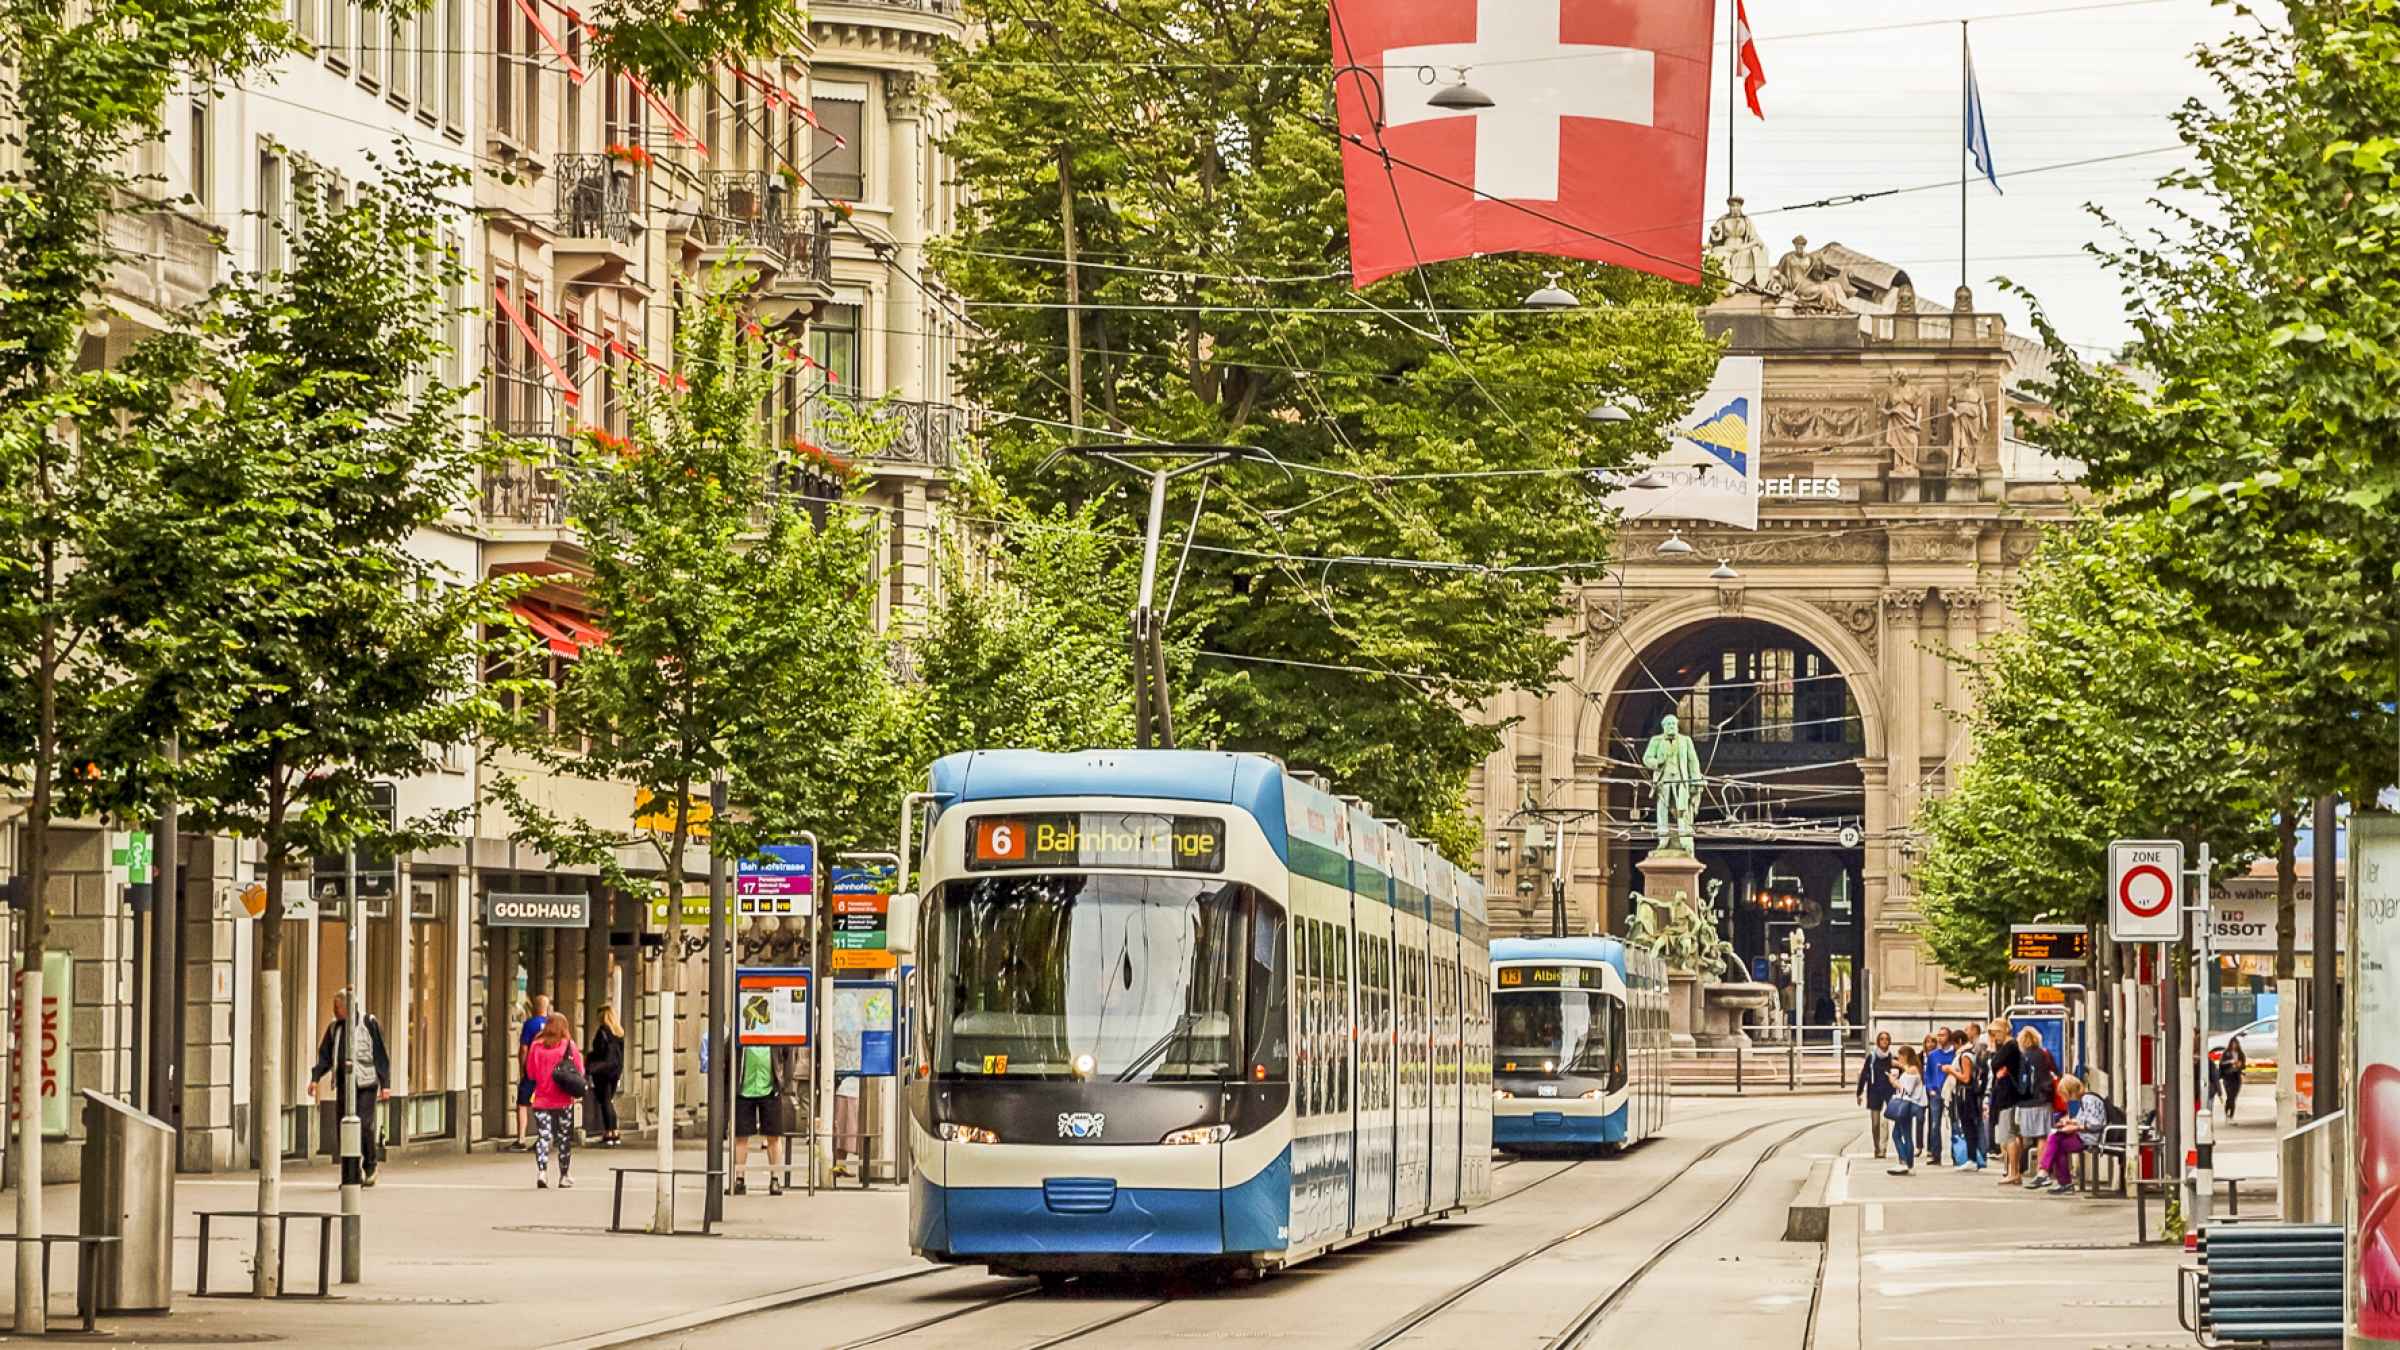 Bahnhofstrasse, Zurich, Zurich - Book Tickets & Tours | GetYourGuide